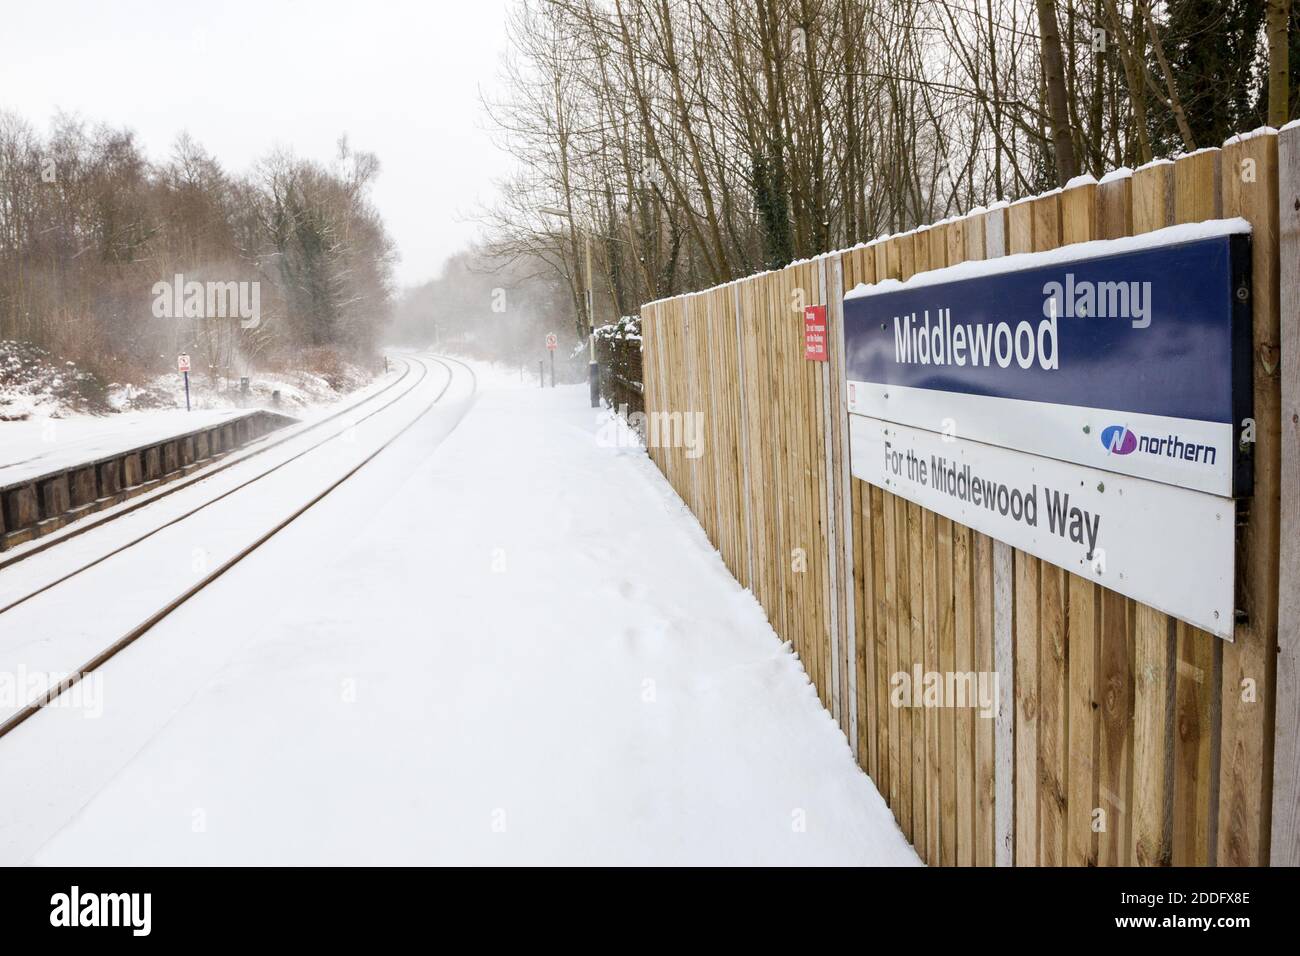 Middelwood Bahnhof im Winter und mit Schnee bedeckt Stockfoto